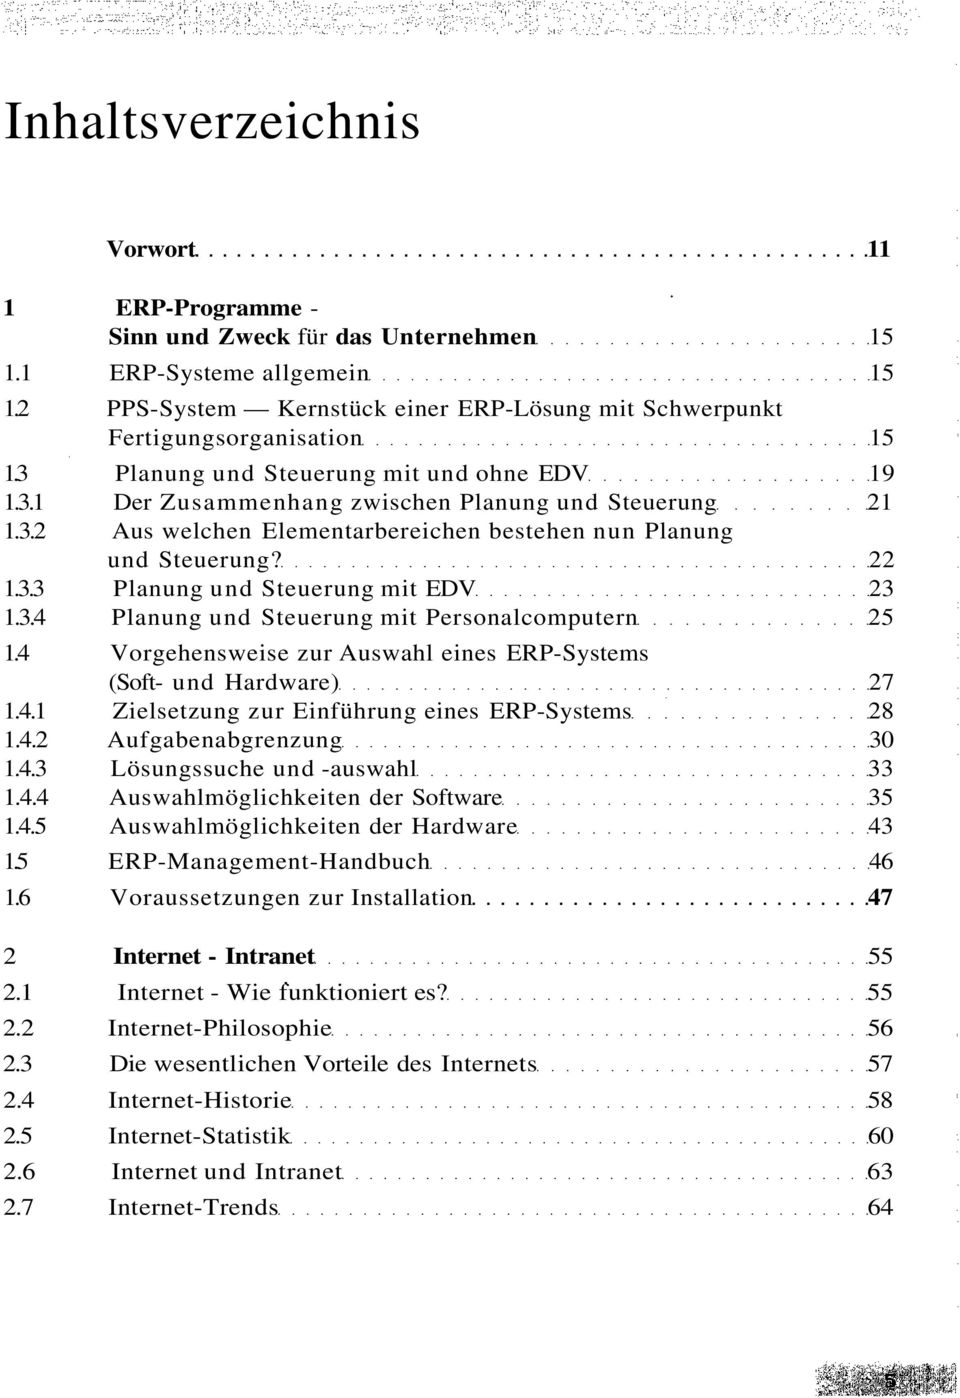 22 1.3.3 Planung und Steuerung mit EDV 23 1.3.4 Planung und Steuerung mit Personalcomputern 25 1.4 Vorgehensweise zur Auswahl eines ERP-Systems (Soft- und Hardware) 27 1.4.1 Zielsetzung zur Einführung eines ERP-Systems 28 1.